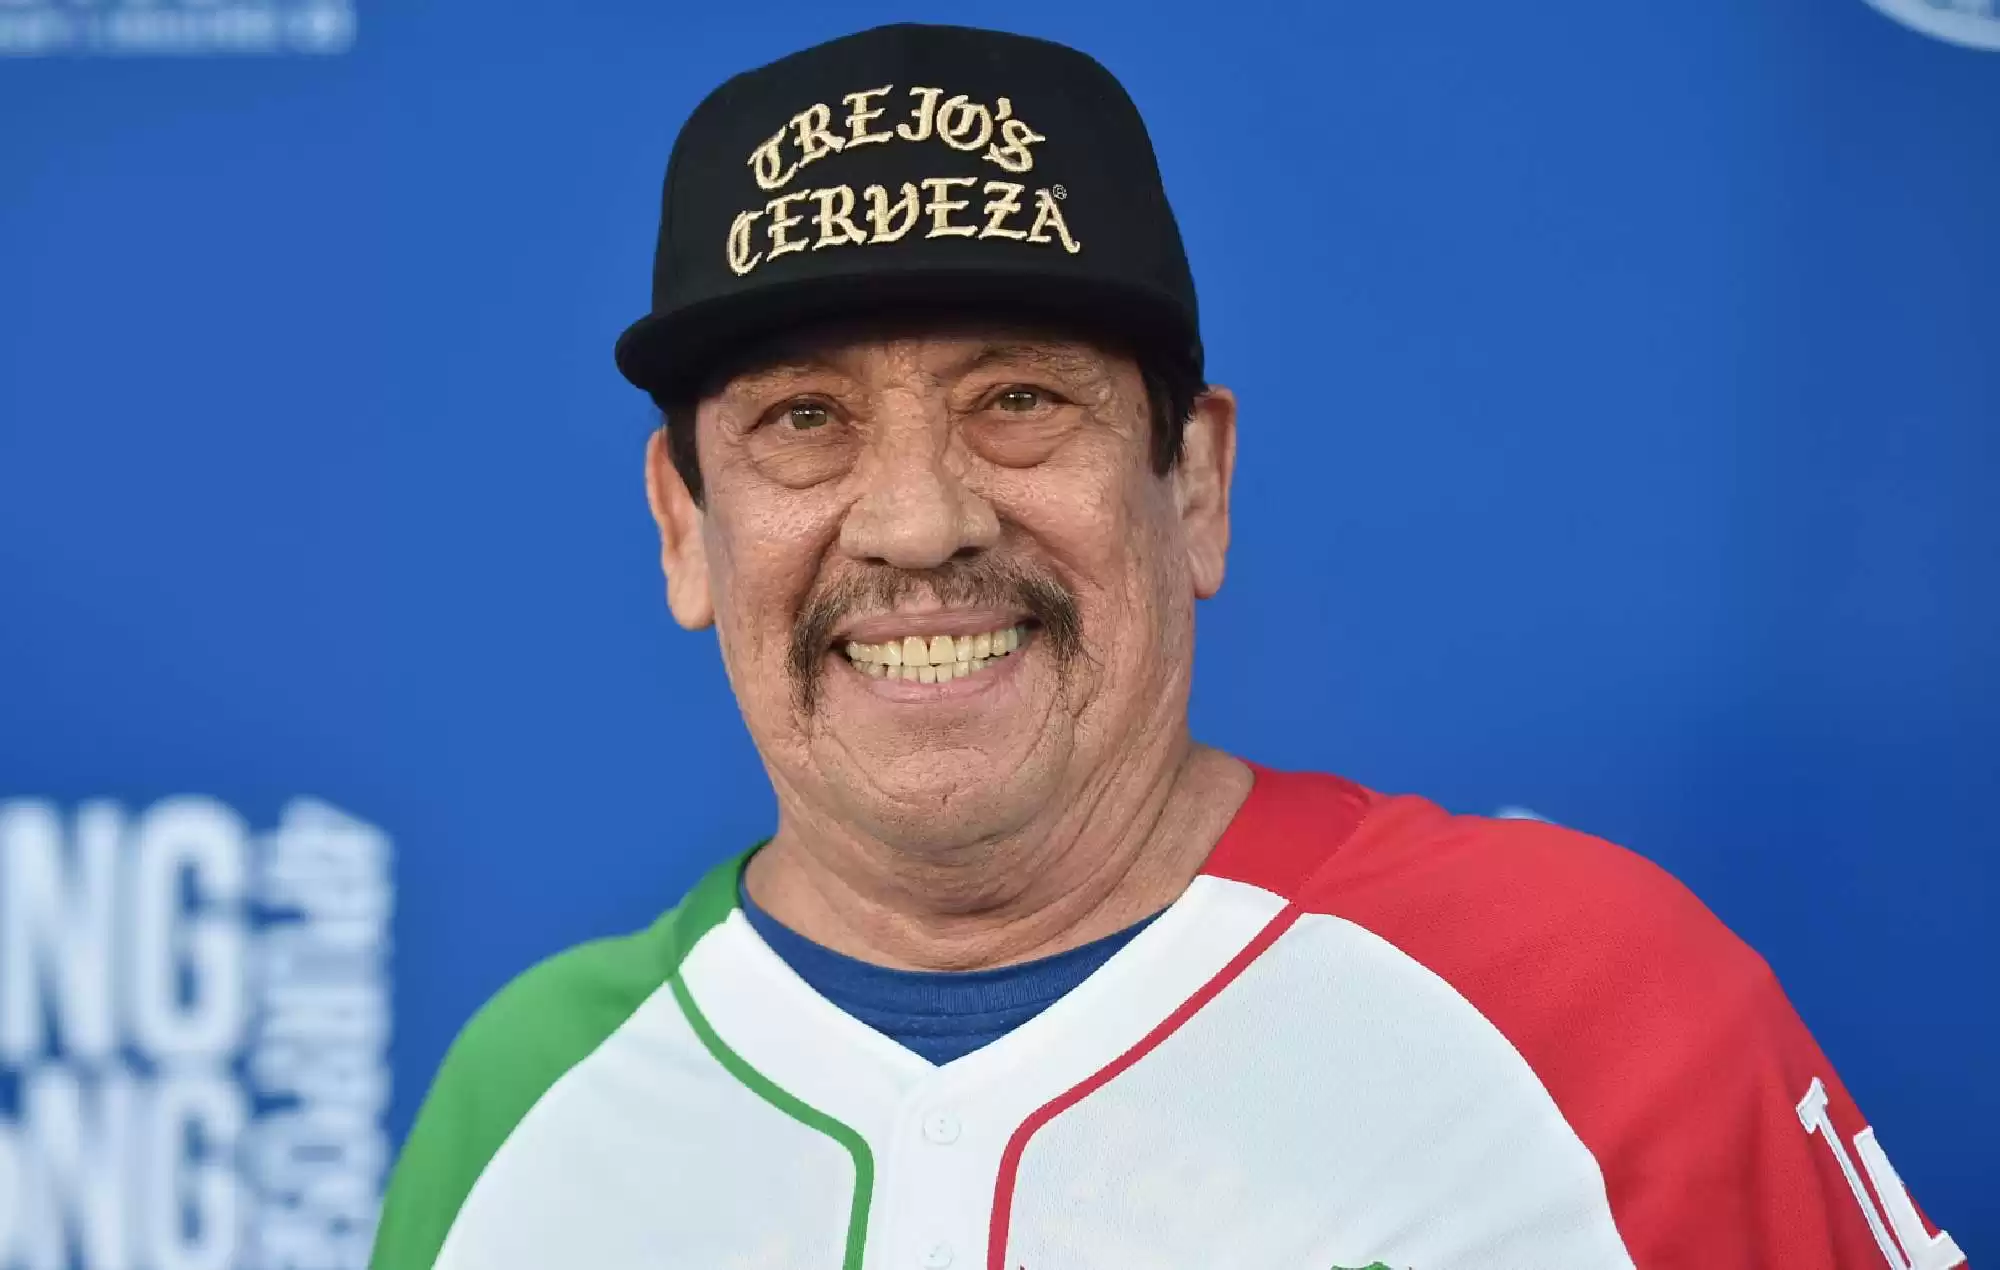 Danny Trejo celebrates 55 years sober